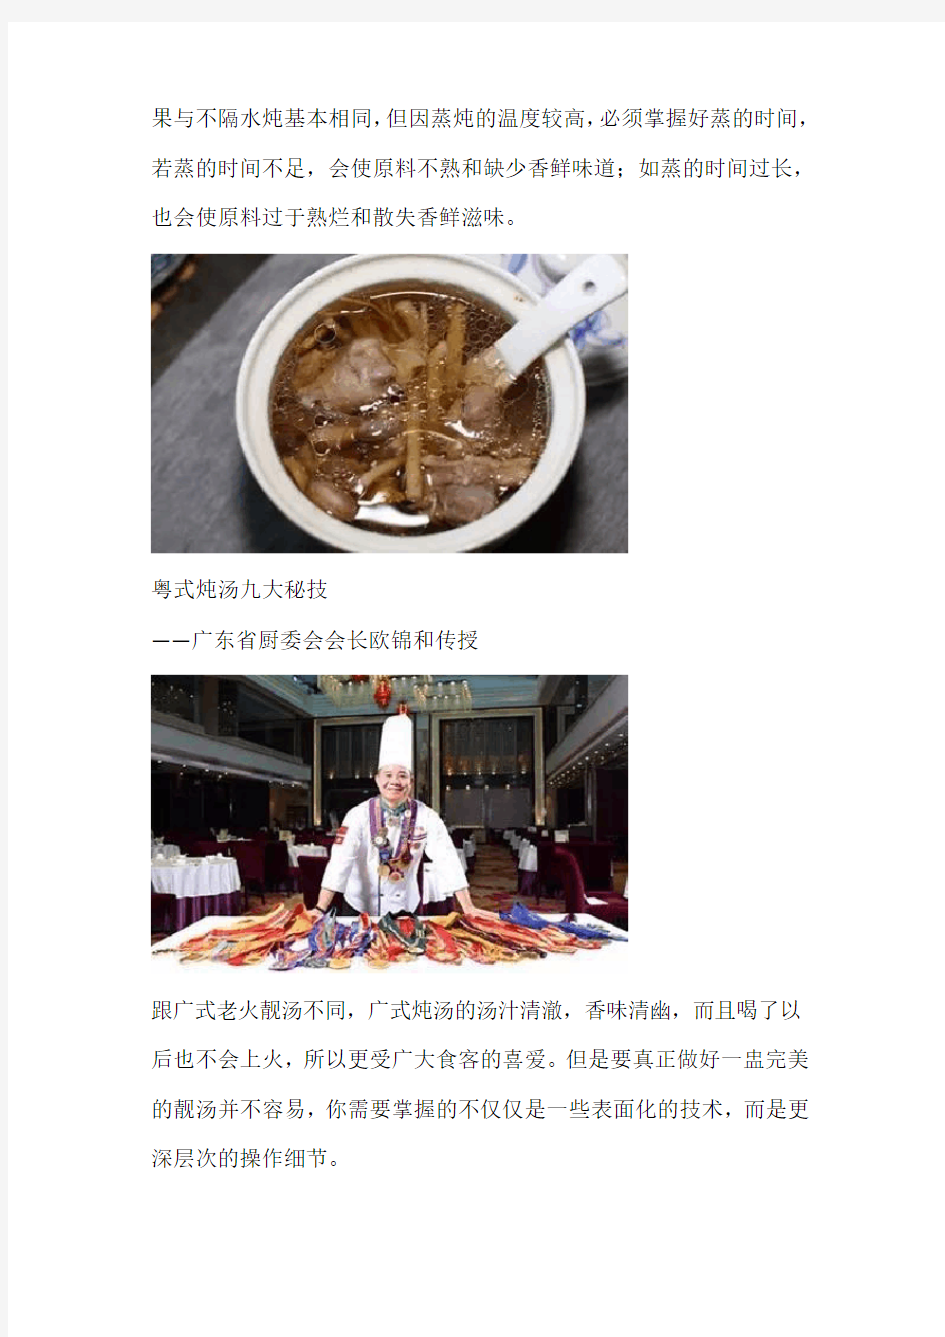 粤式炖汤的方法